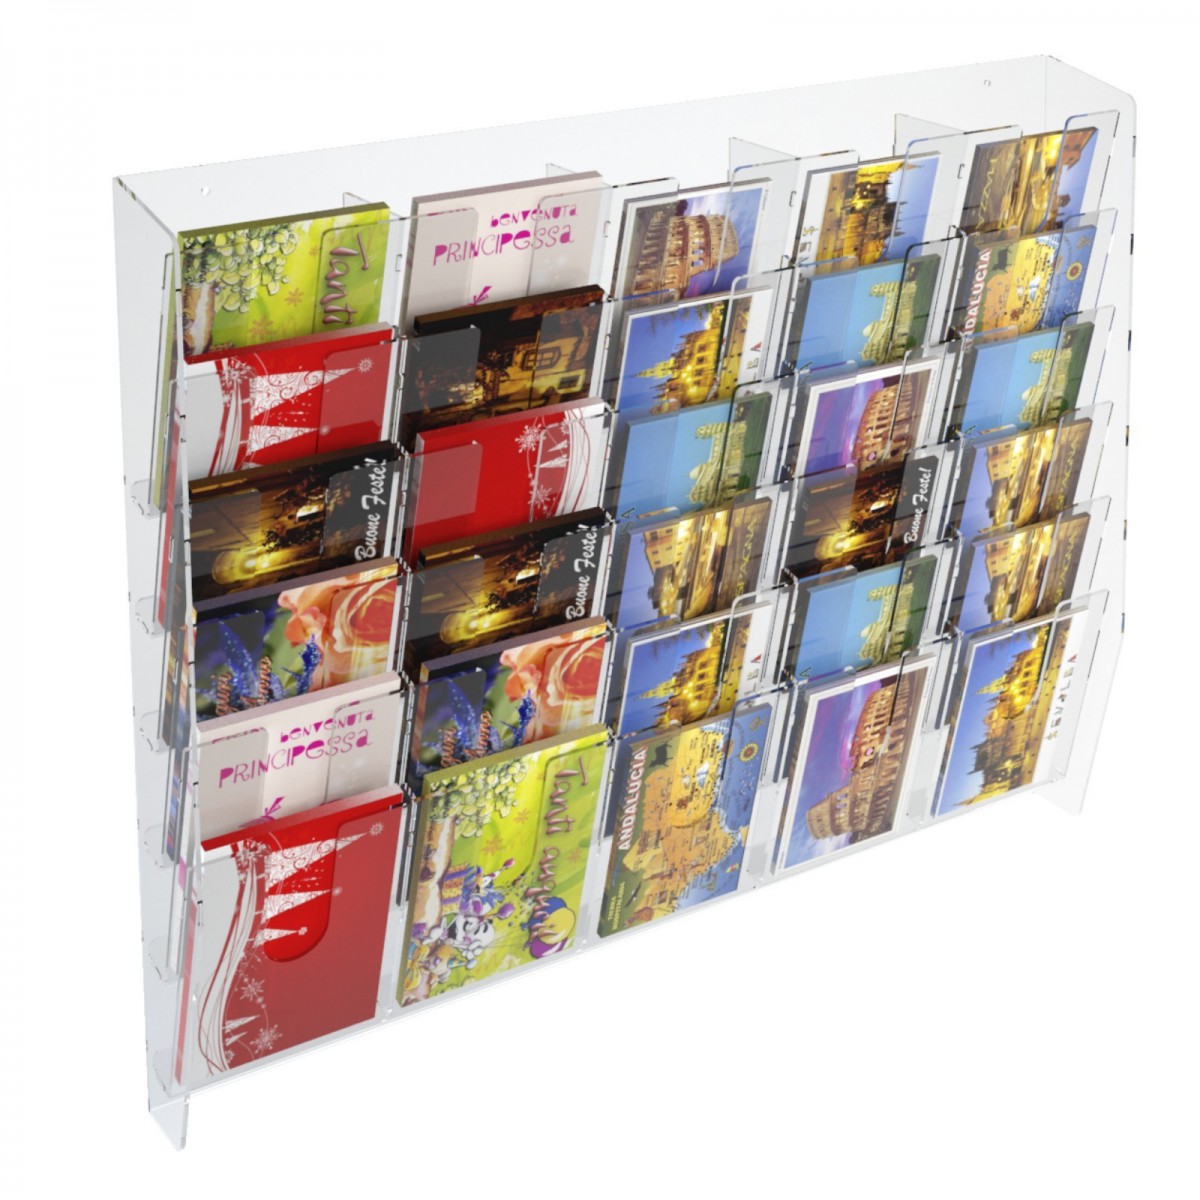 E-399 EPC-E - Espositore porta cartoline da parete in plexiglass trasparente a 30 tasche